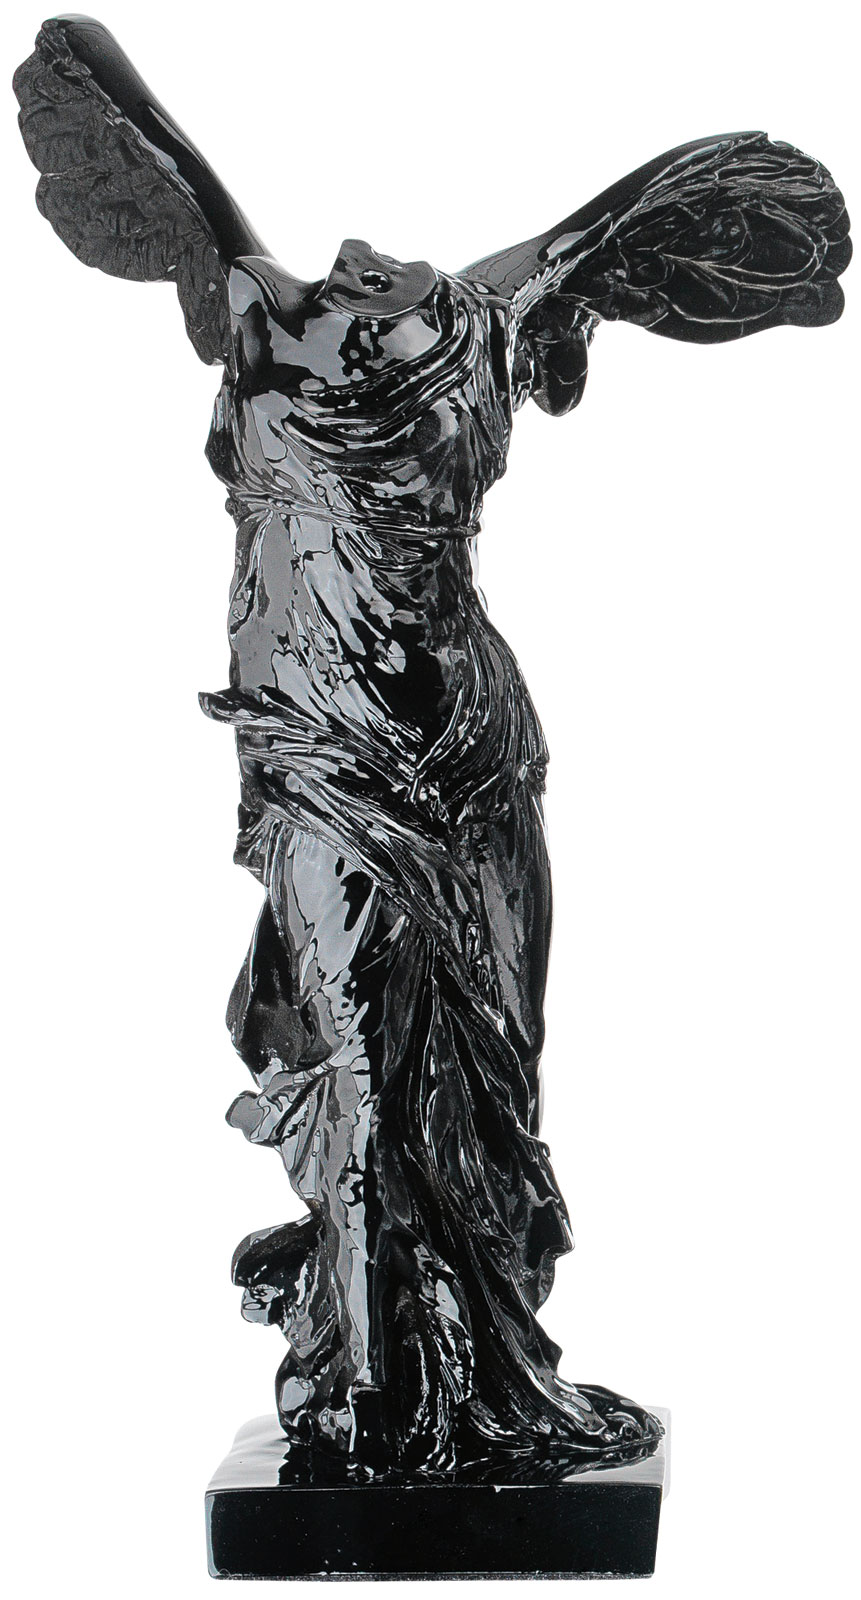 Skulptur 'Nike von Samothrake', Kunstguss schwarz